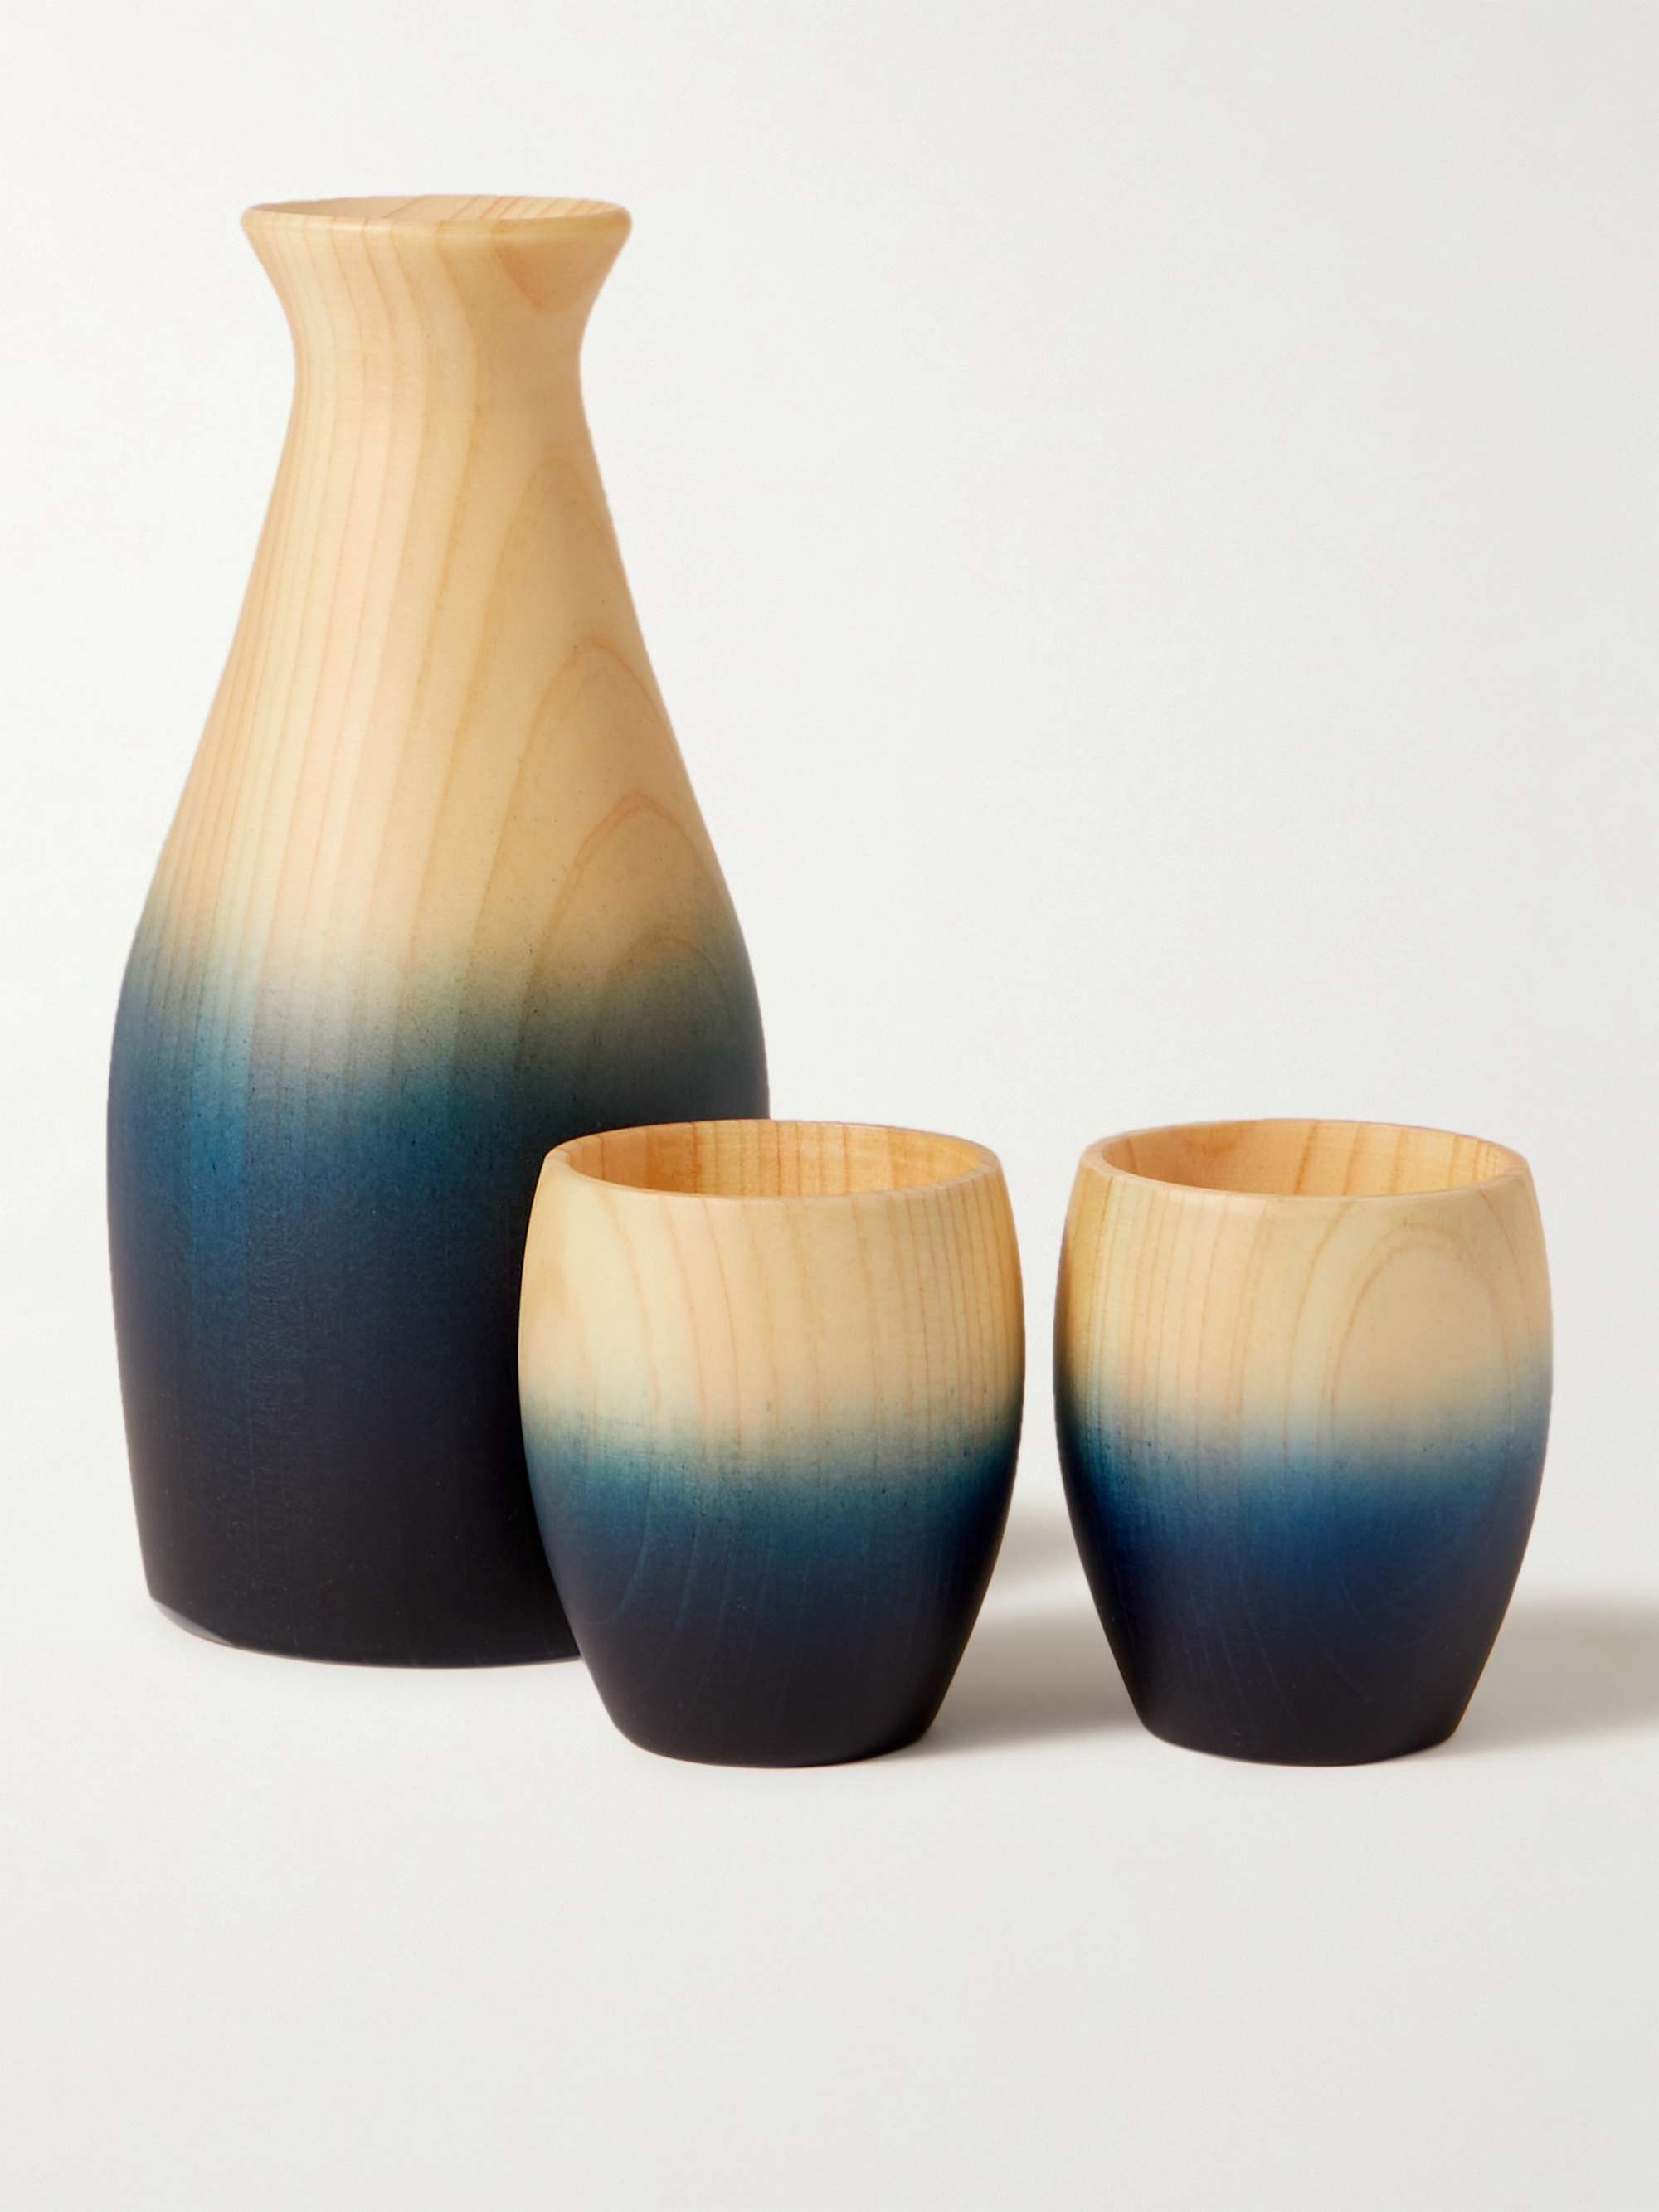 JAPANESE CRAFT Aola Hinoki Wood Sake Cup and Bottle Set